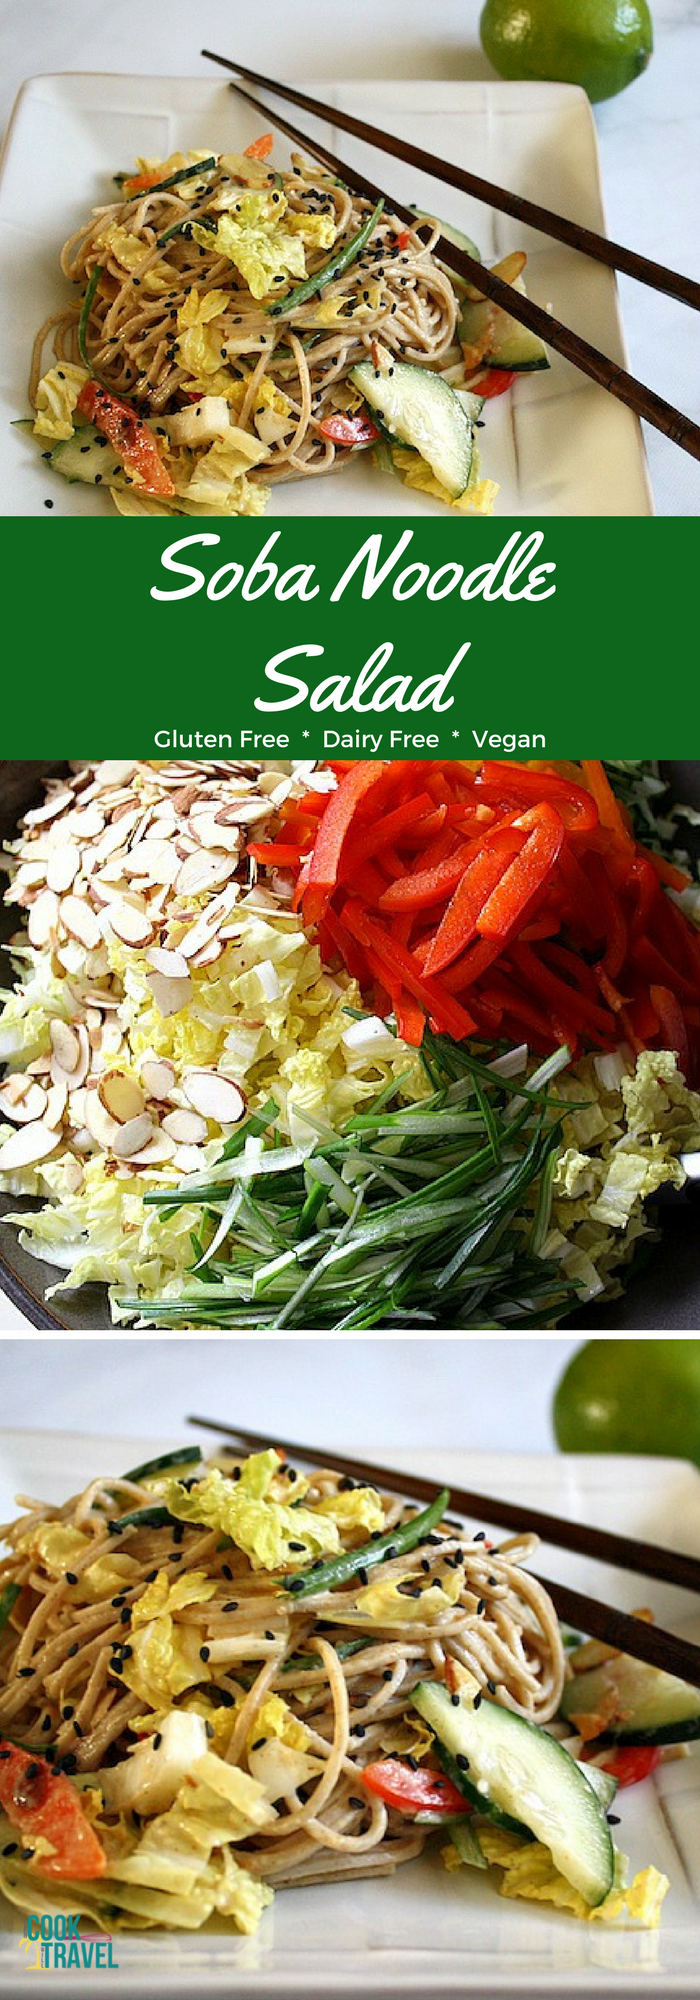 Asian Pasta Salad